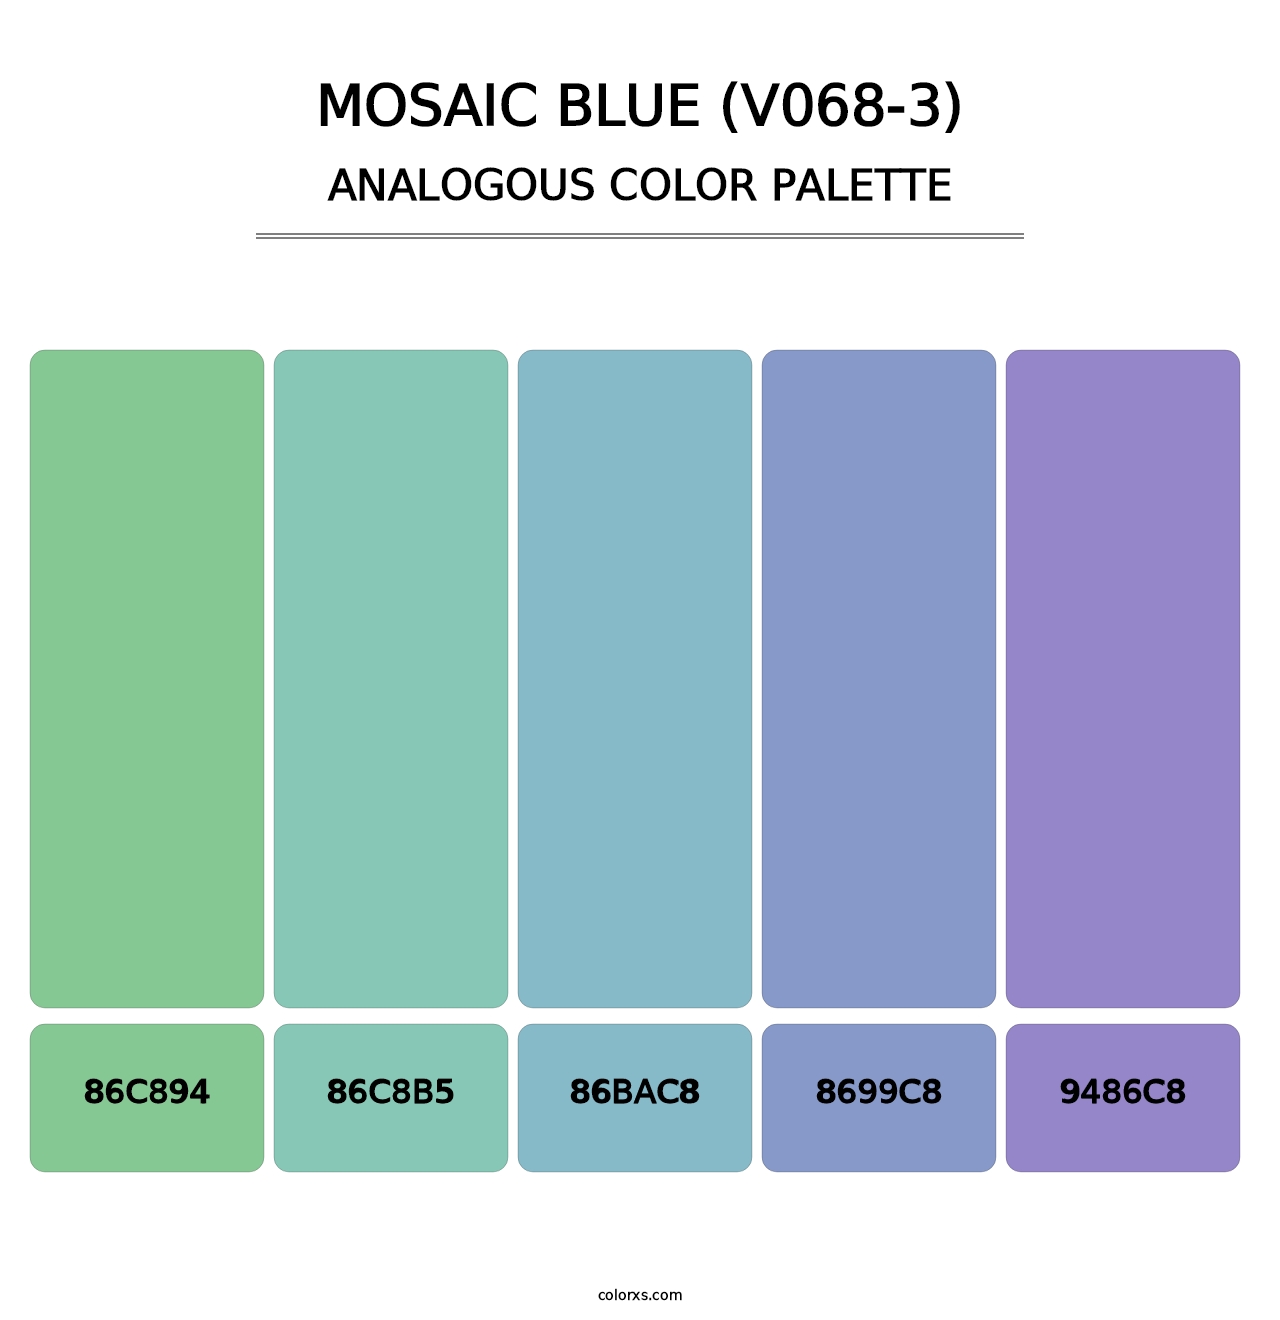 Mosaic Blue (V068-3) - Analogous Color Palette